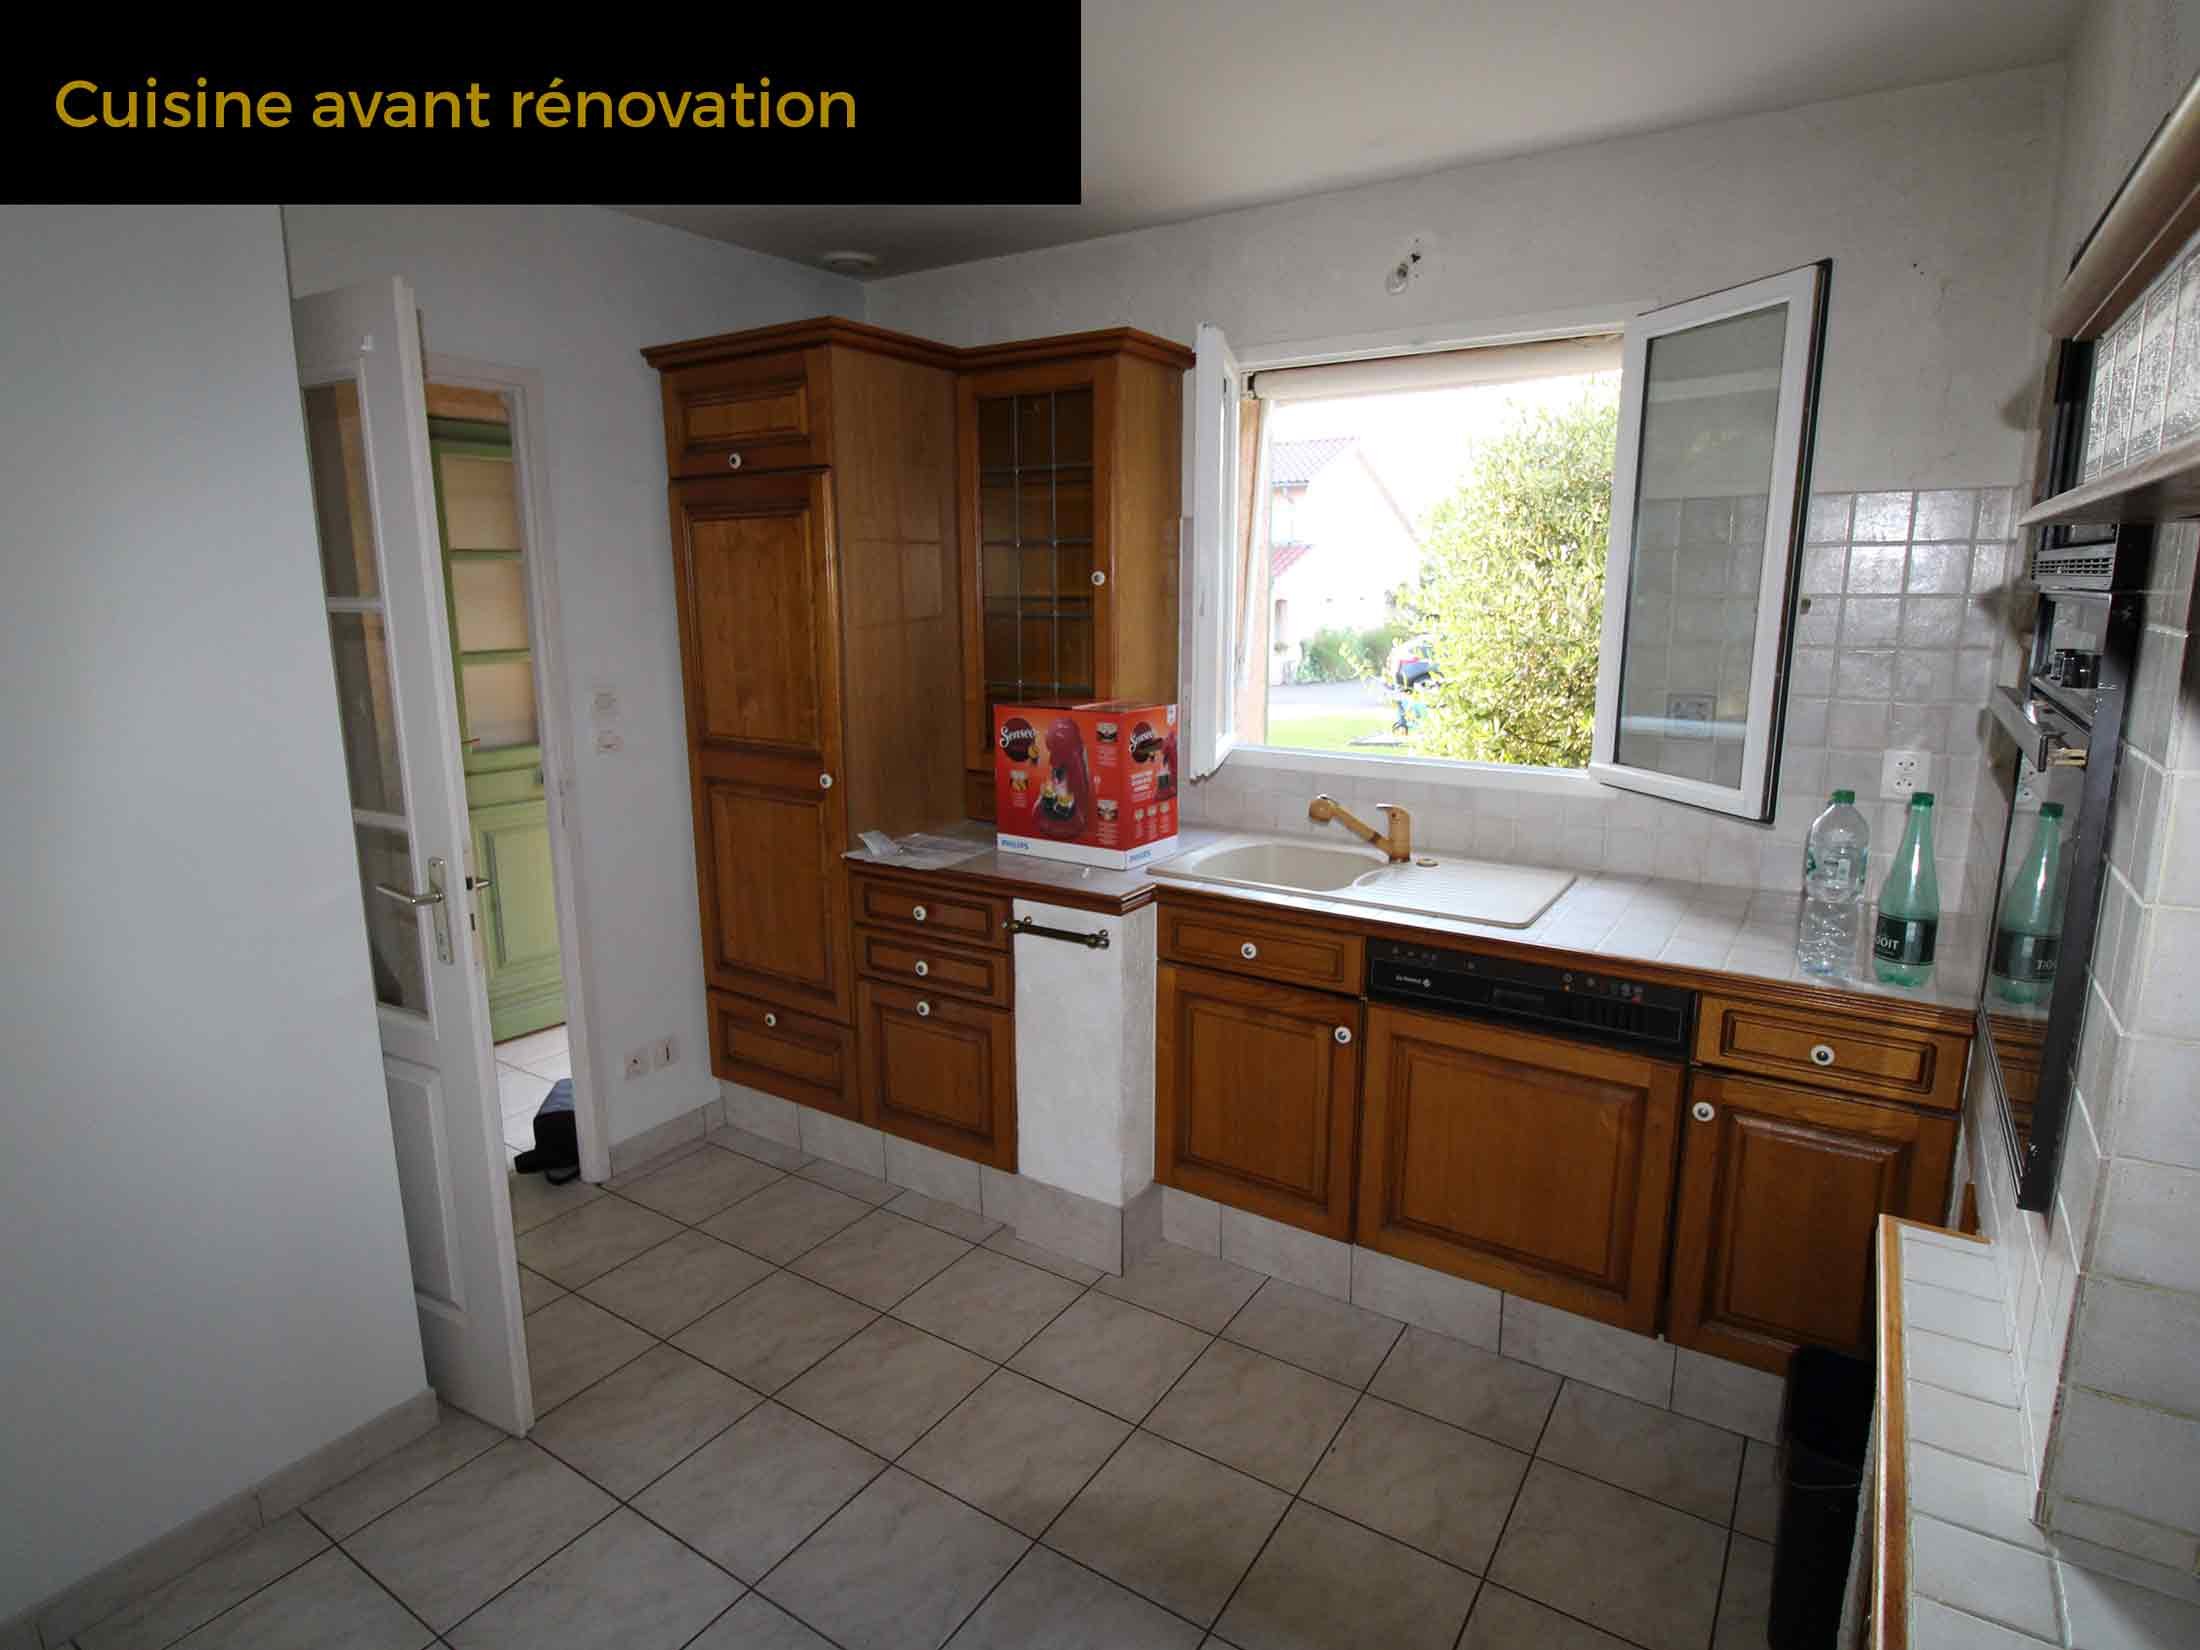 13a-cuisine-avant-renovation-champagne-maison